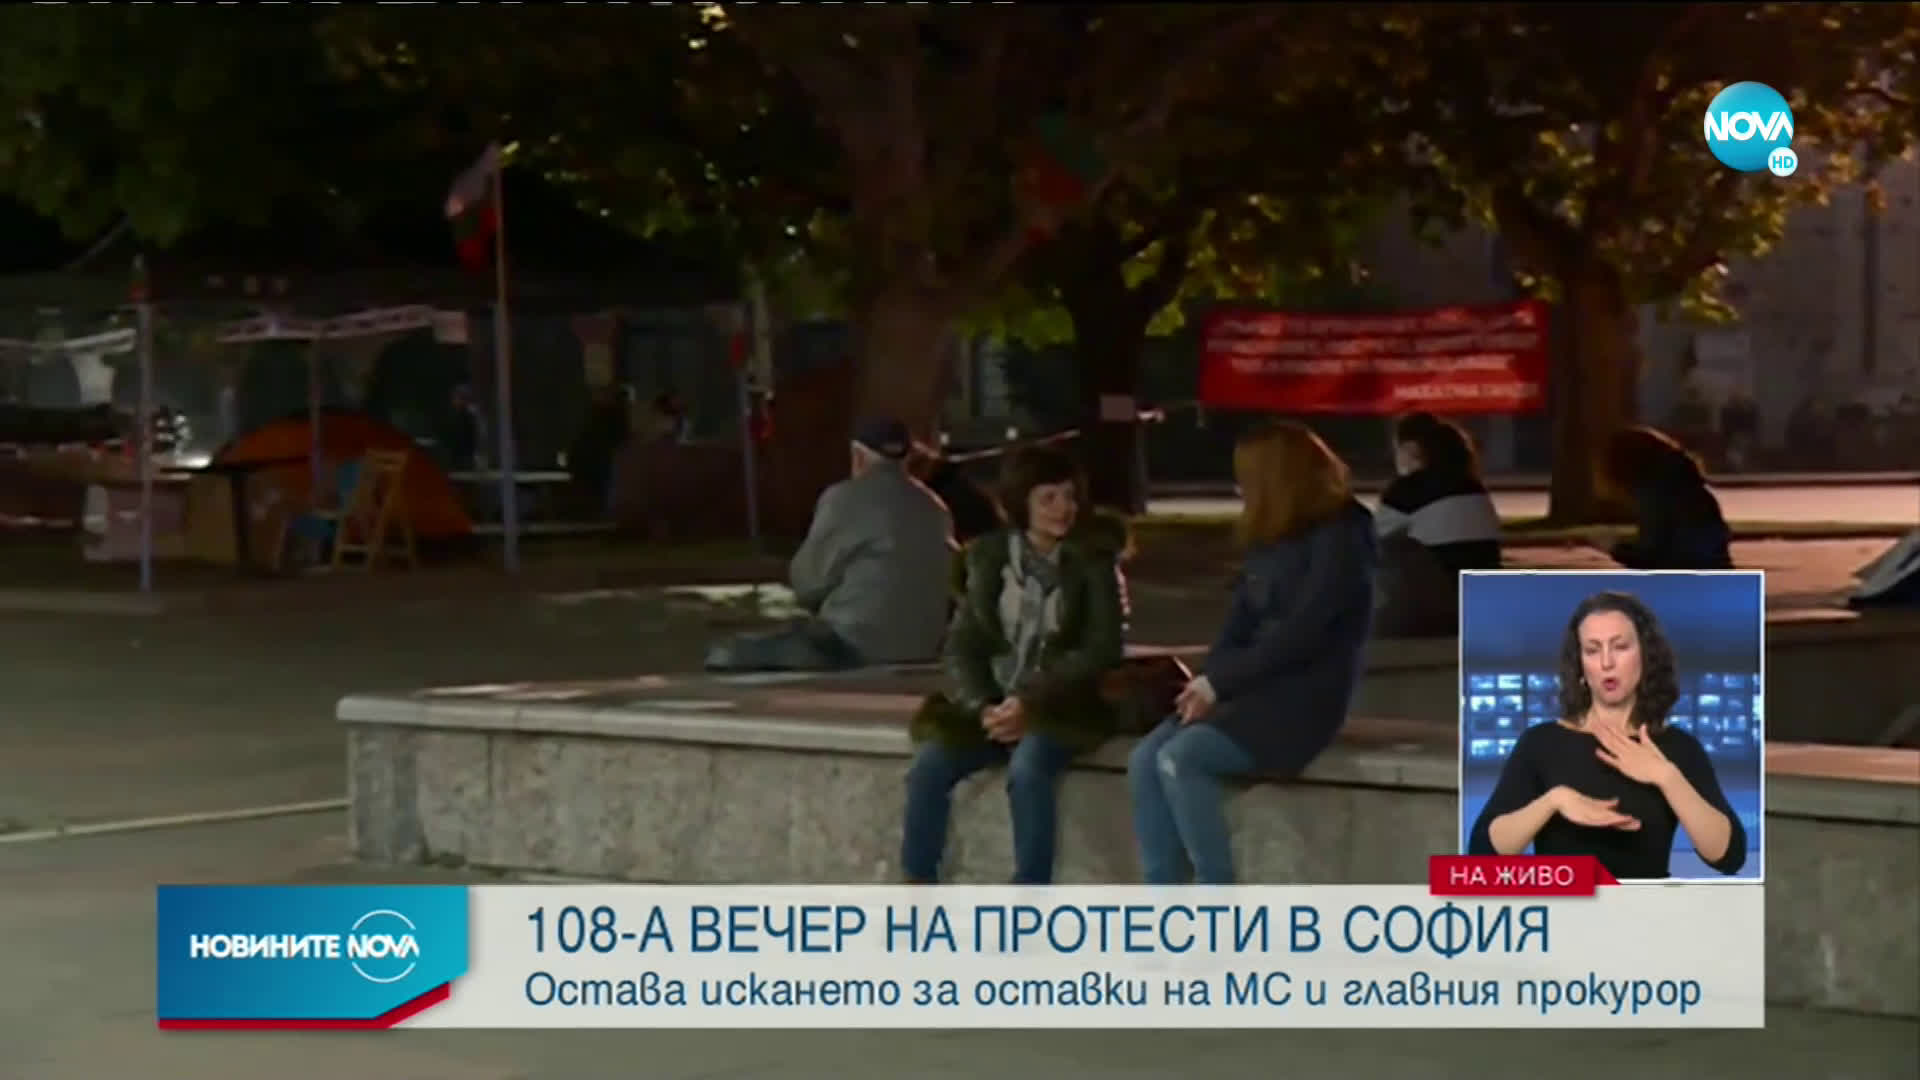 108-а вечер на протести в София